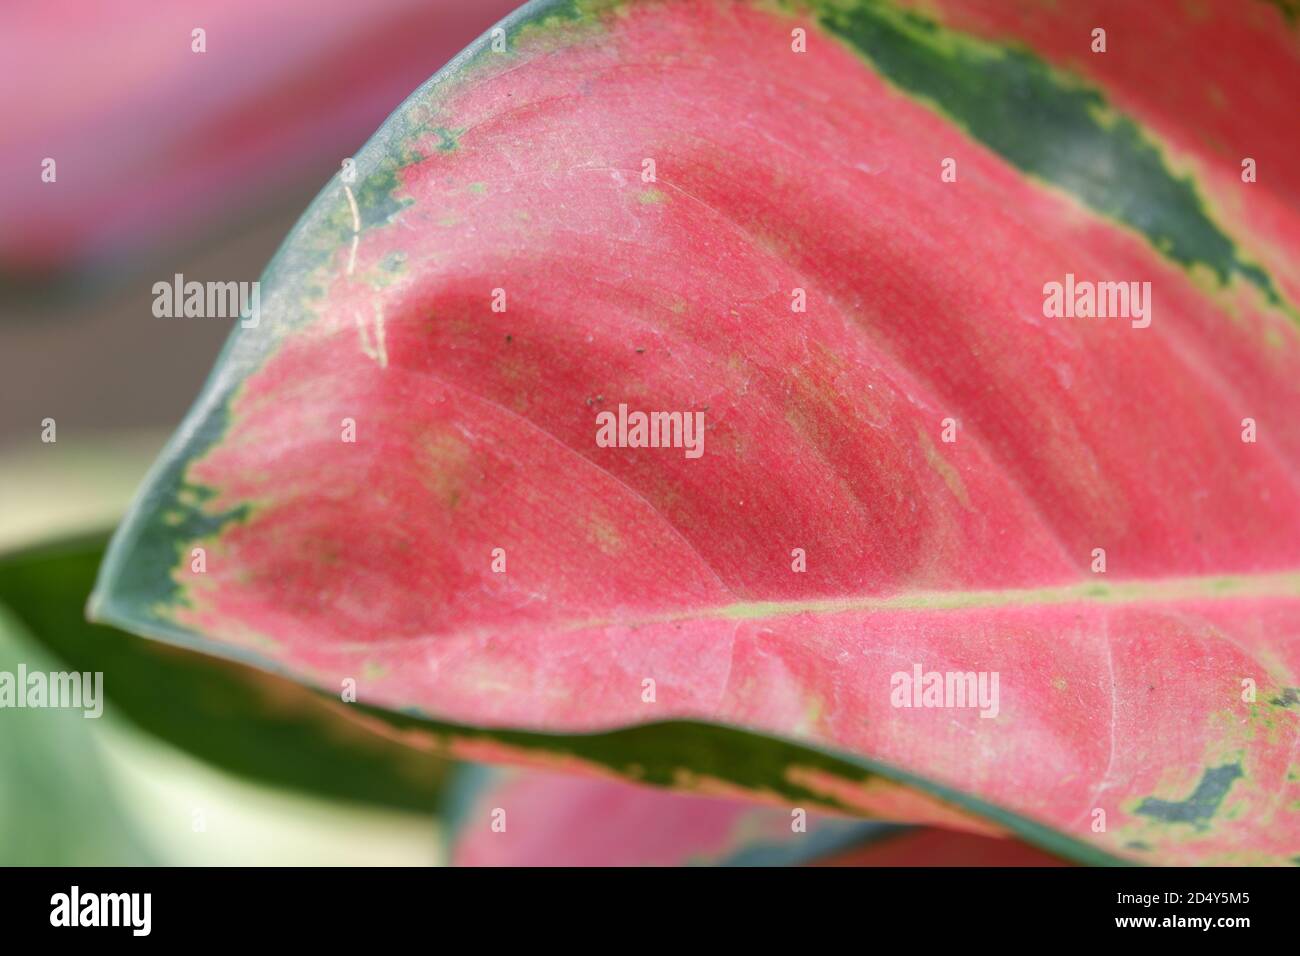 vue rapprochée de la texture des feuilles d'aglonema dans le jardin avec un arrière-plan plus bleu isolé Banque D'Images